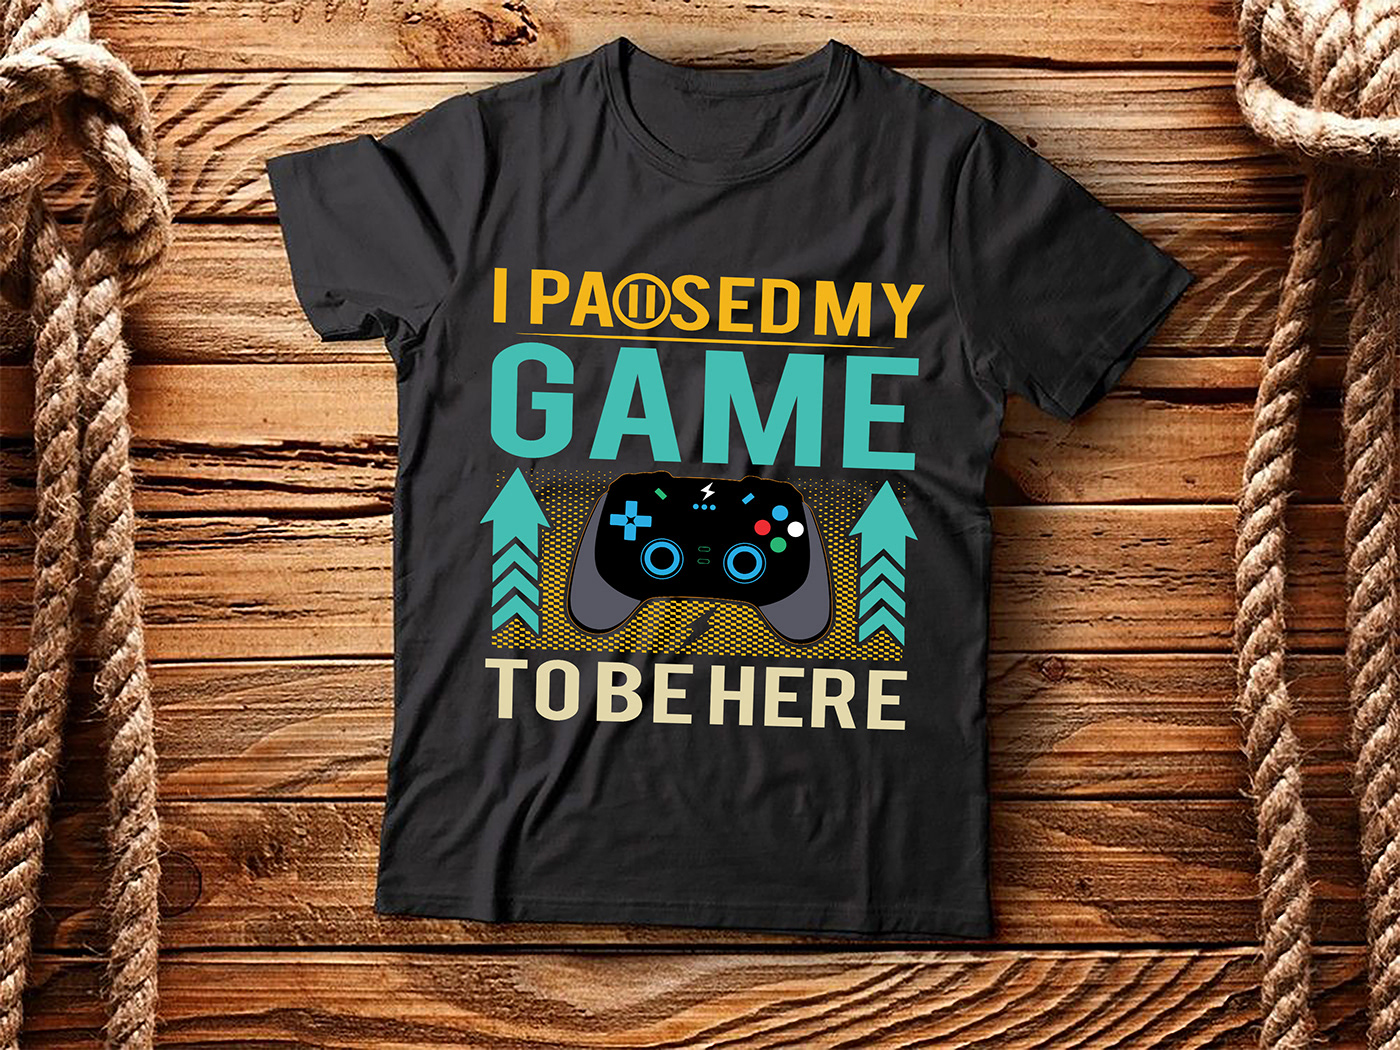 t shirts t shirt design free t shirt mockup Gamer Gaming print ready gaming shirt shop gaming t shirt T Shirt Design AI unique gaming t shirt